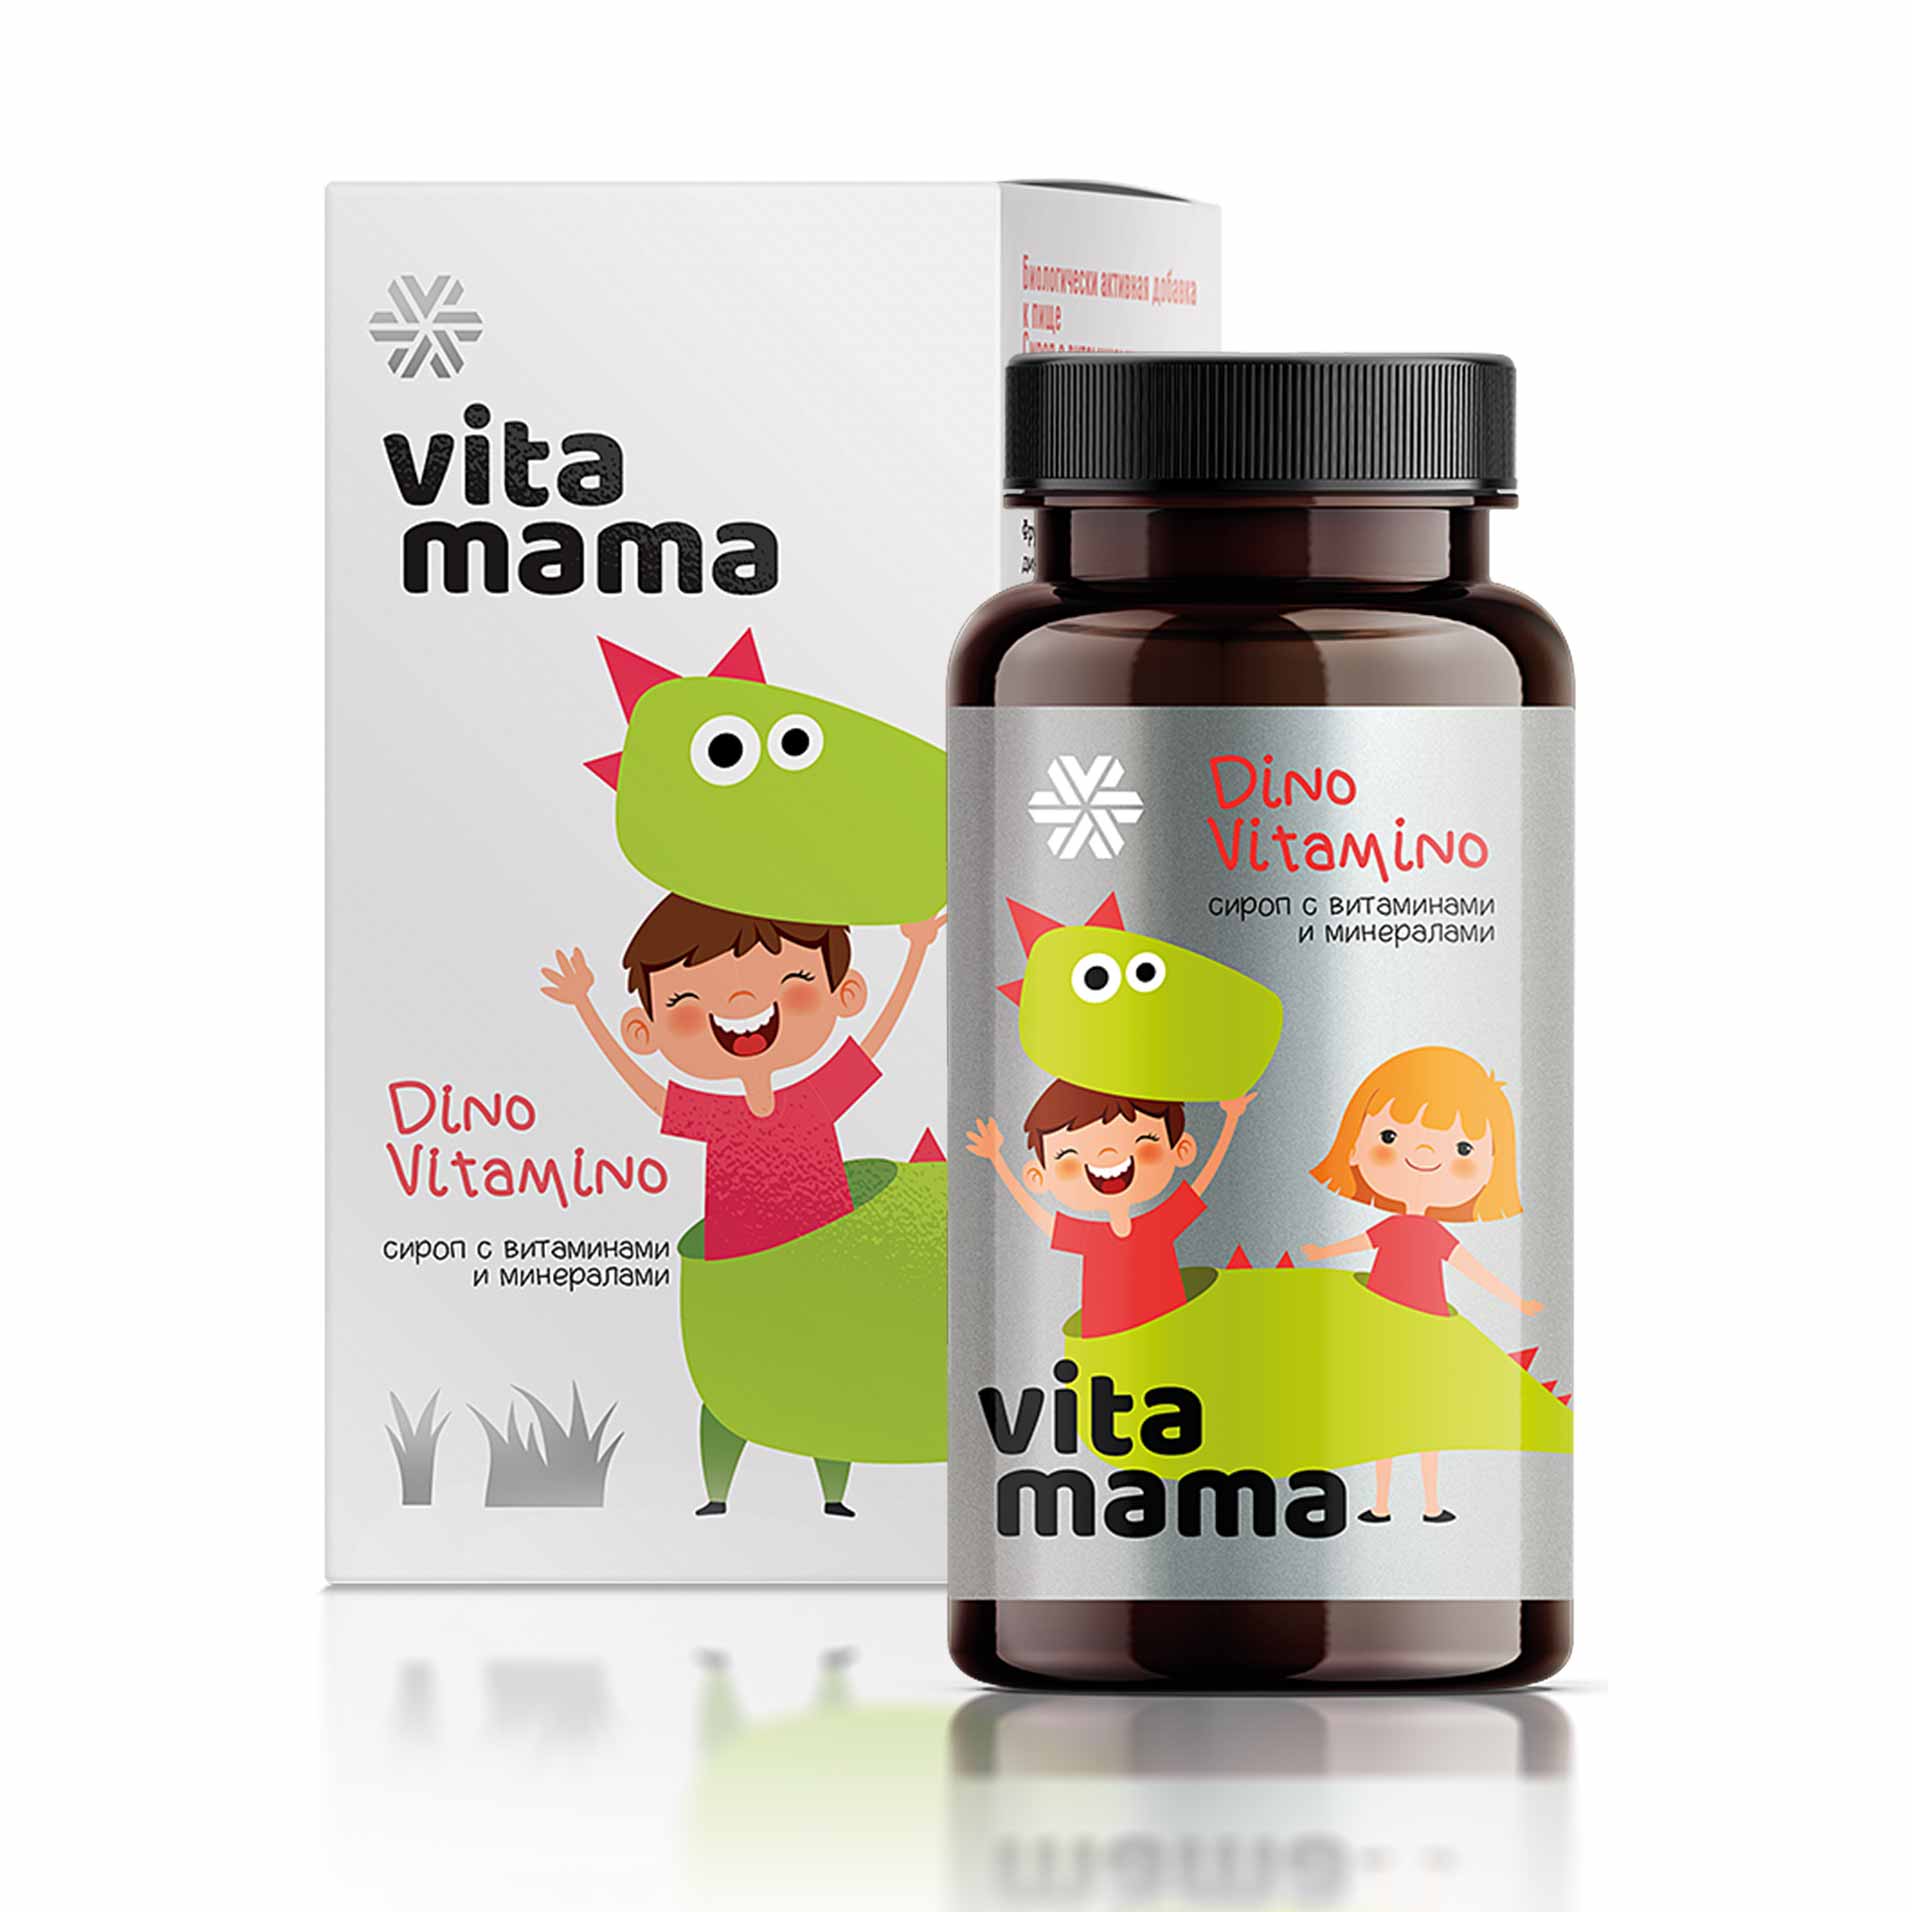 Изображение отсутствует.
			Купить Dino Vitamino, сироп с витаминами и минералами - Vitamama //  // 